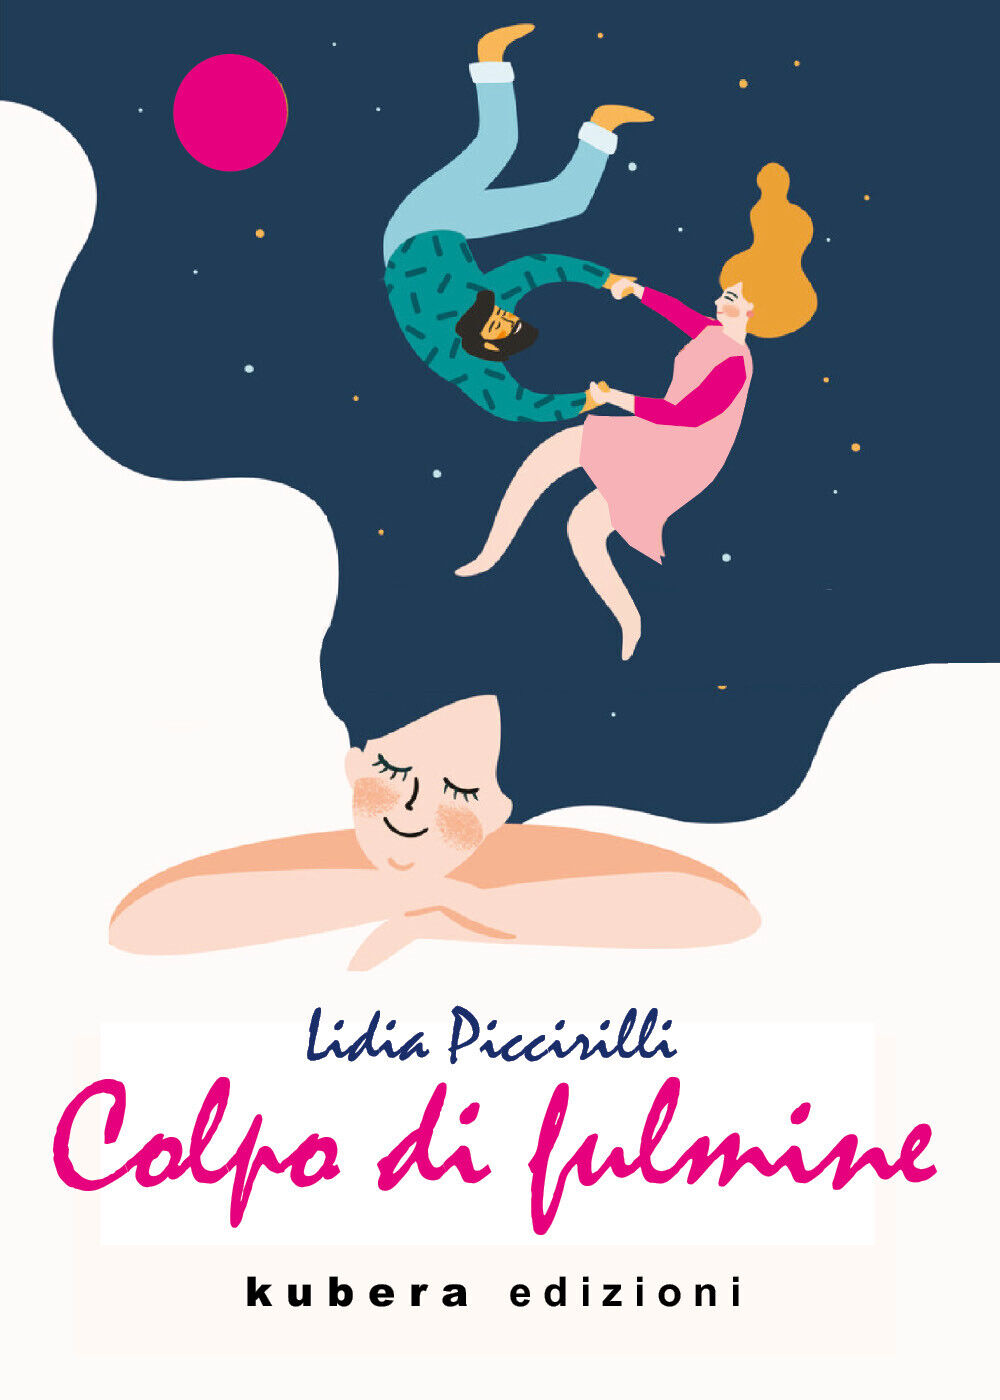 Colpo di fulmine di Lidia Piccirilli,  2021,  Kubera Edizioni libro usato